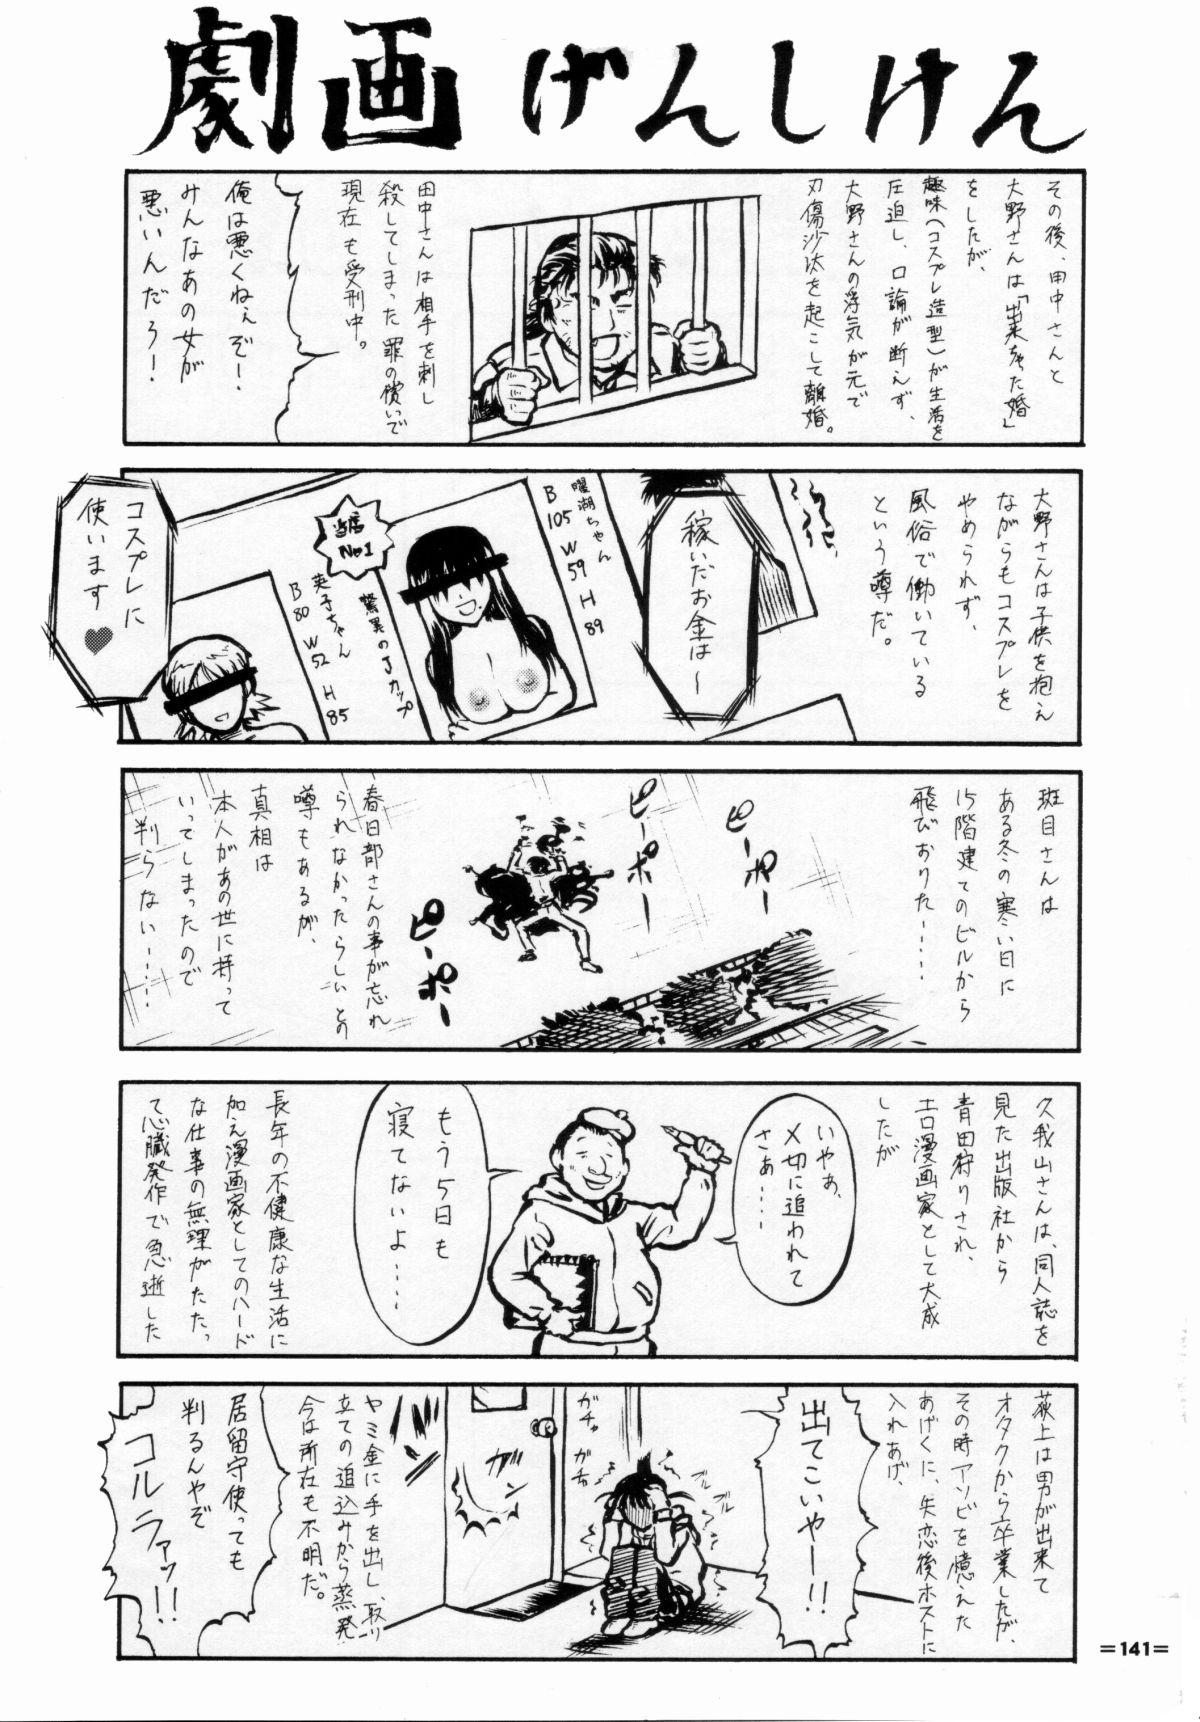 Umeta Manga Shuu 11 -nin iru! 139